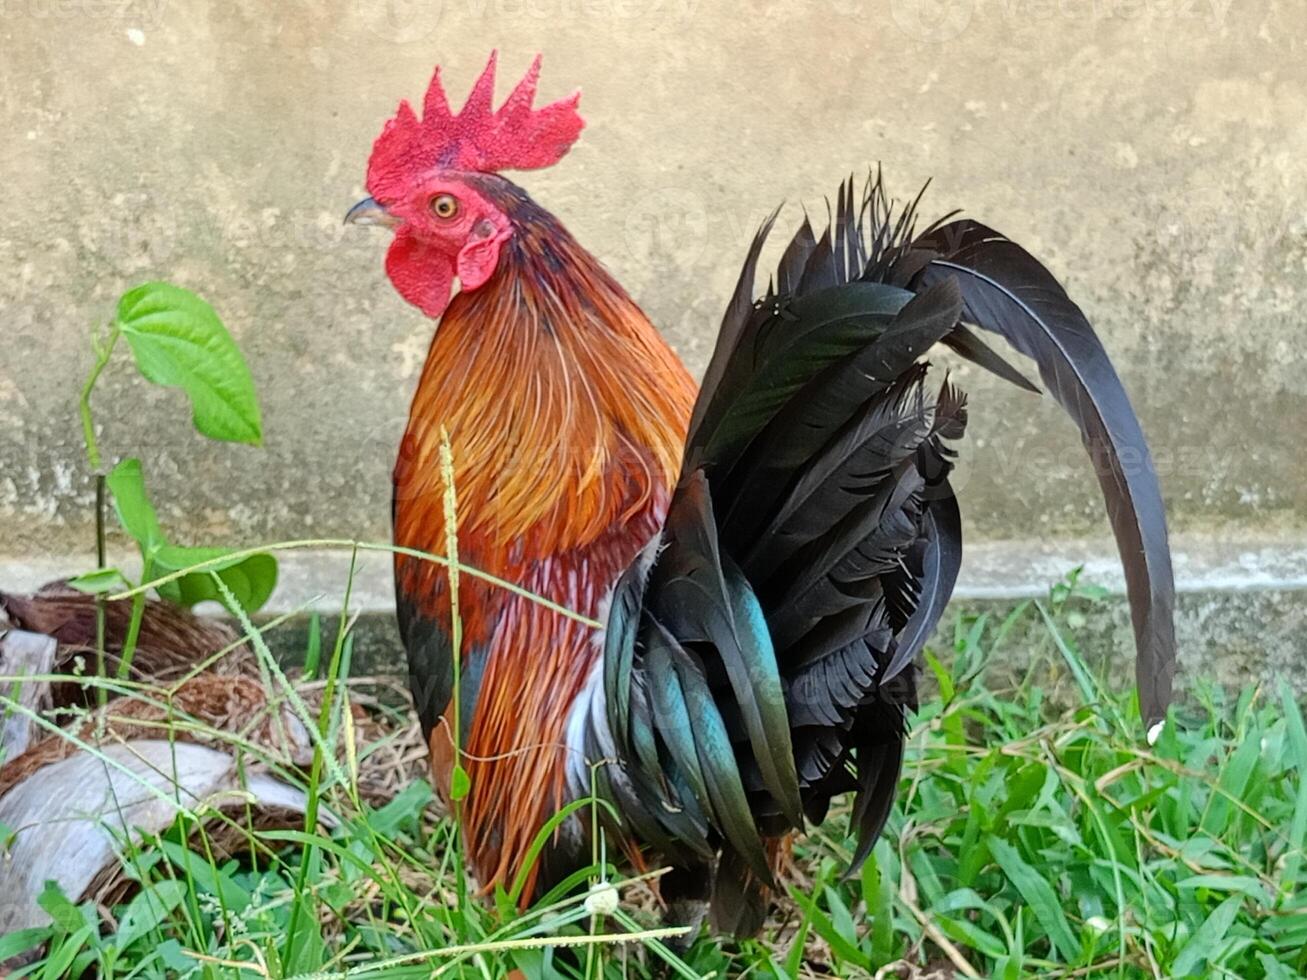 bellissimo colorato selvaggio polli nel Tailandia foto